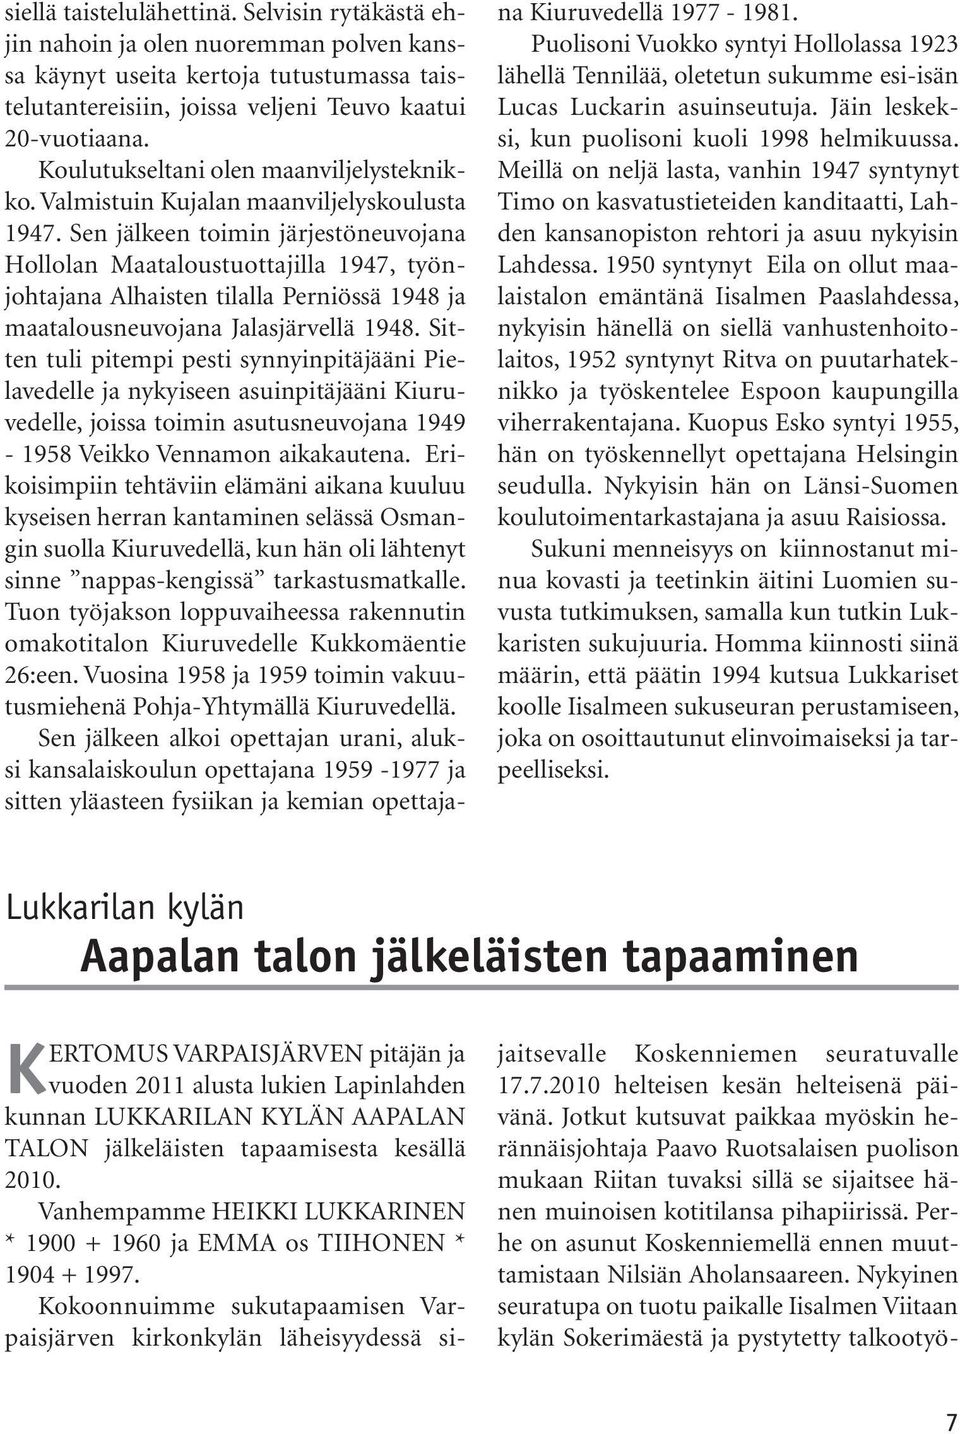 Sen jälkeen toimin järjestöneuvojana Hollolan Maataloustuottajilla 1947, työnjohtajana Alhaisten tilalla Perniössä 1948 ja maatalousneuvojana Jalasjärvellä 1948.